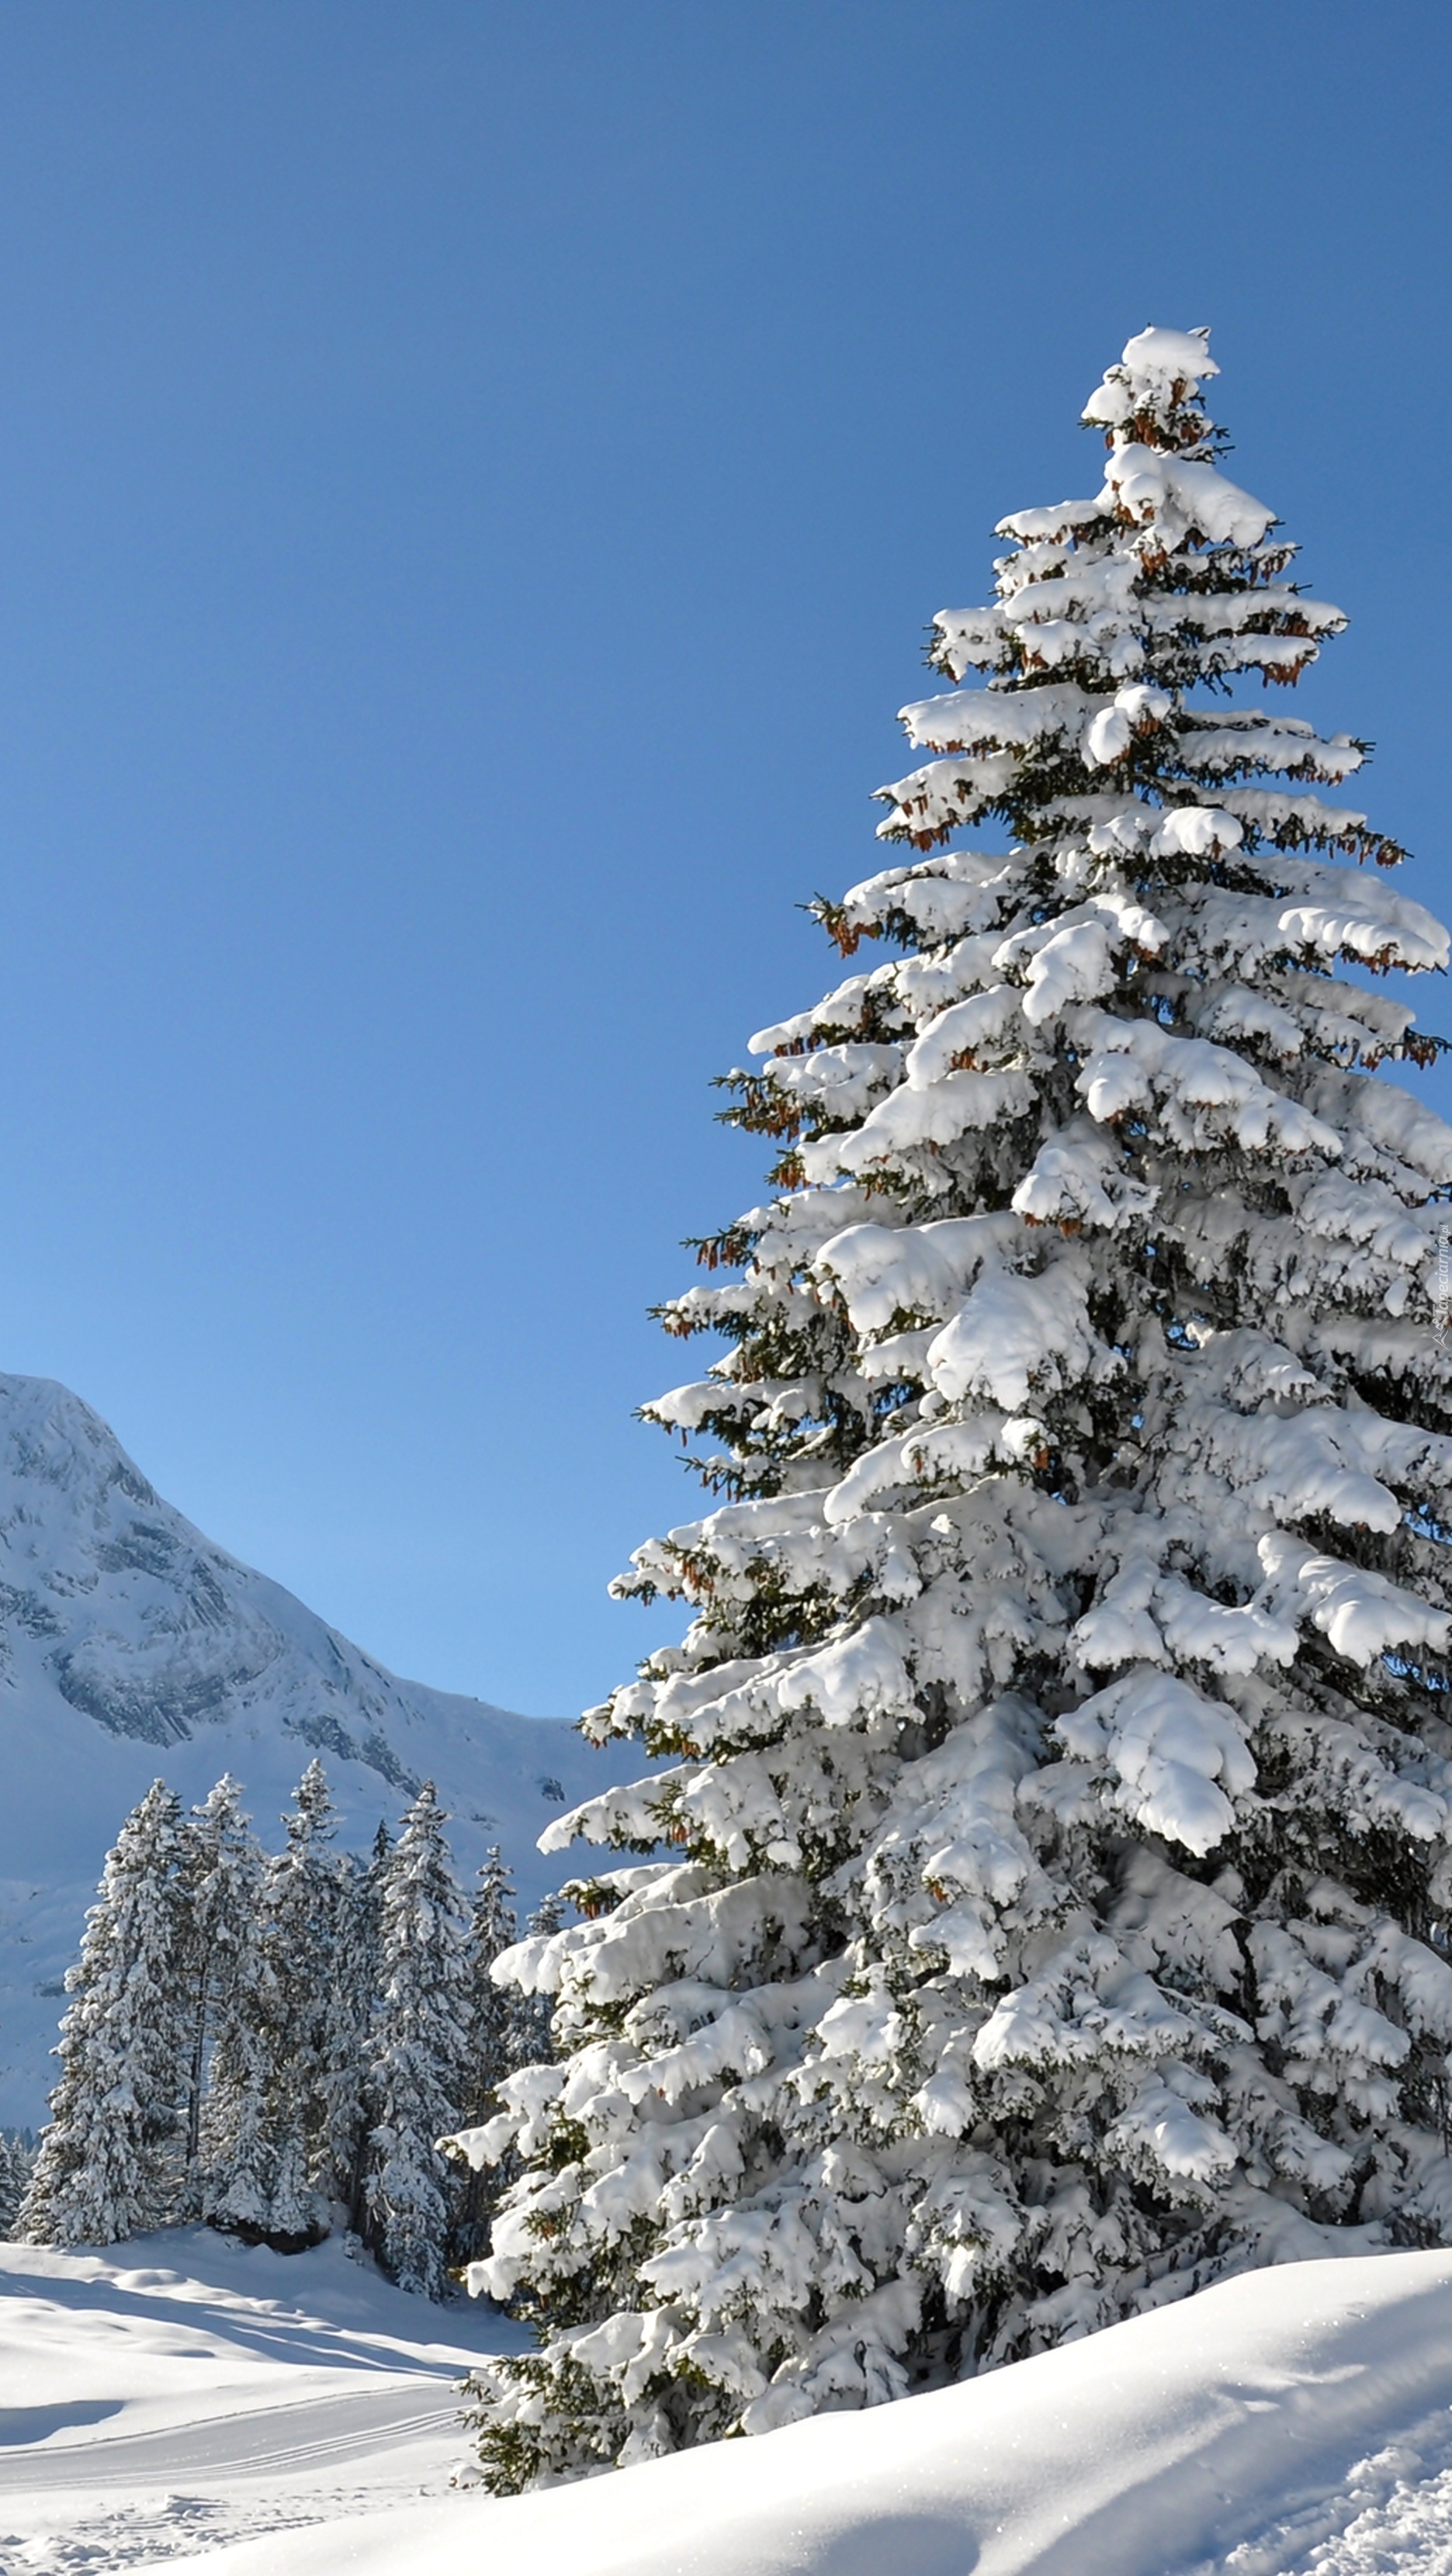 Śnieżna zima króluje w górach i lasach